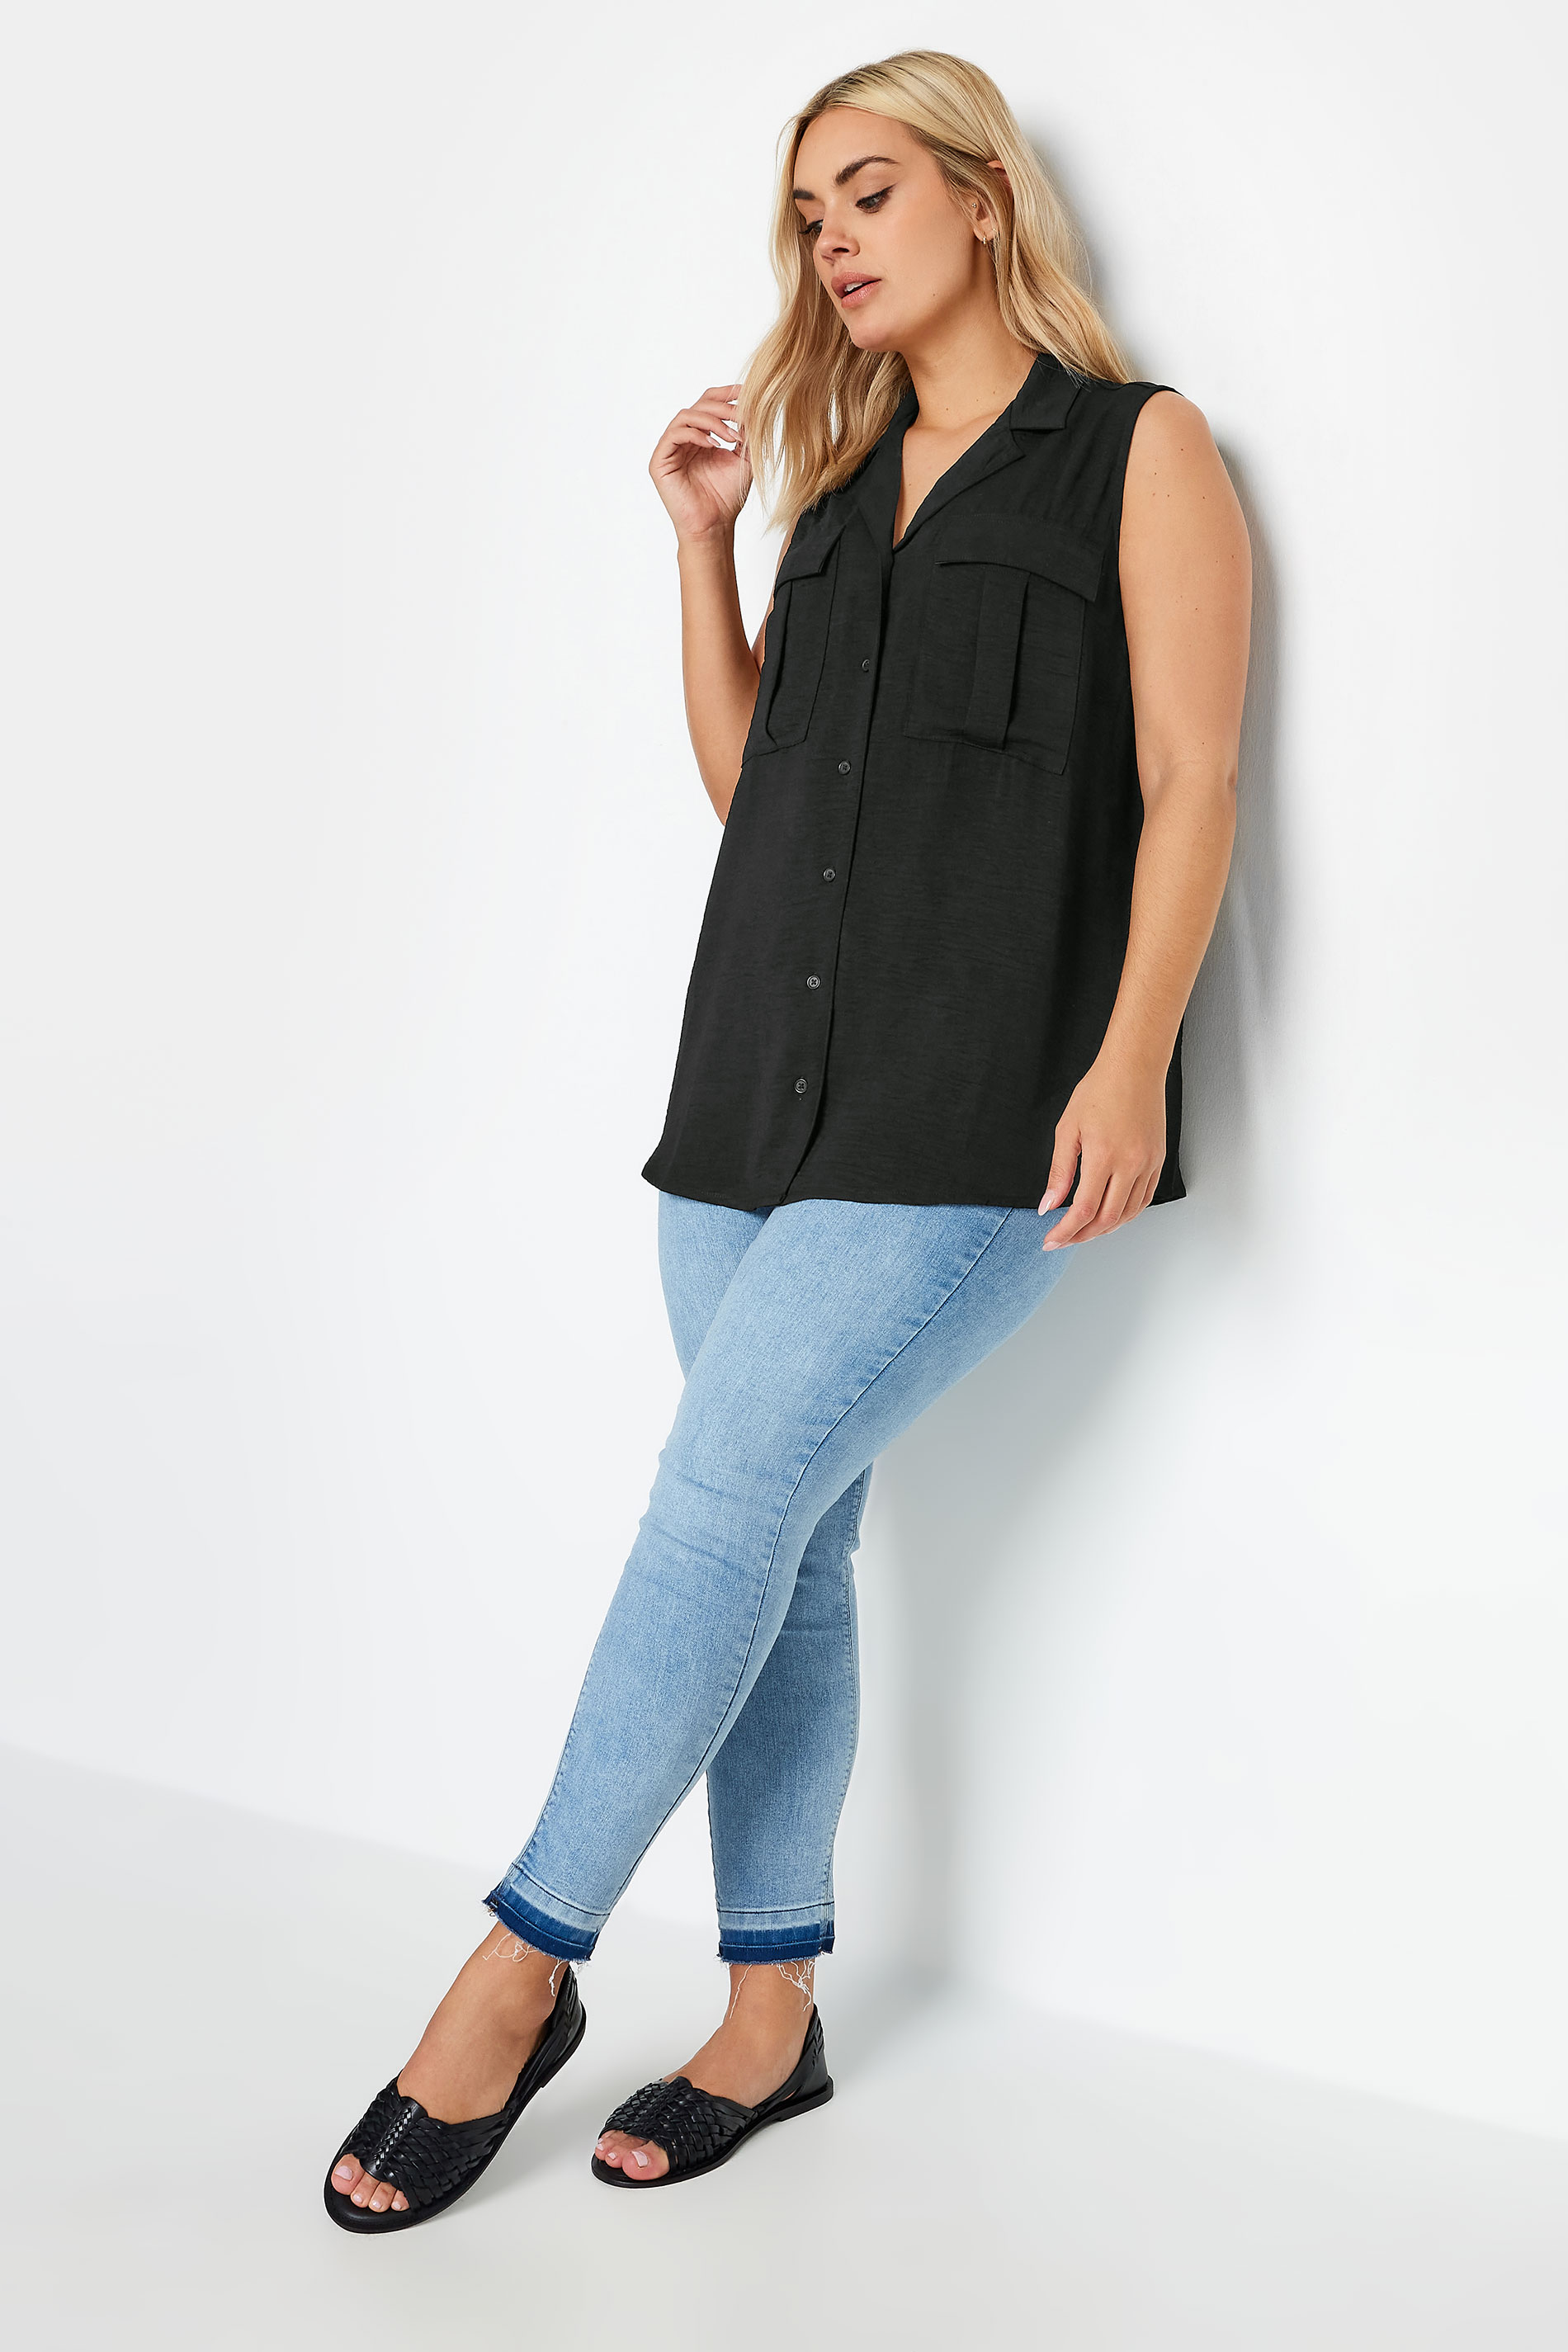 YOURS Plus Size Black Sleeveless Utility Shirt | Yours Clothing 2